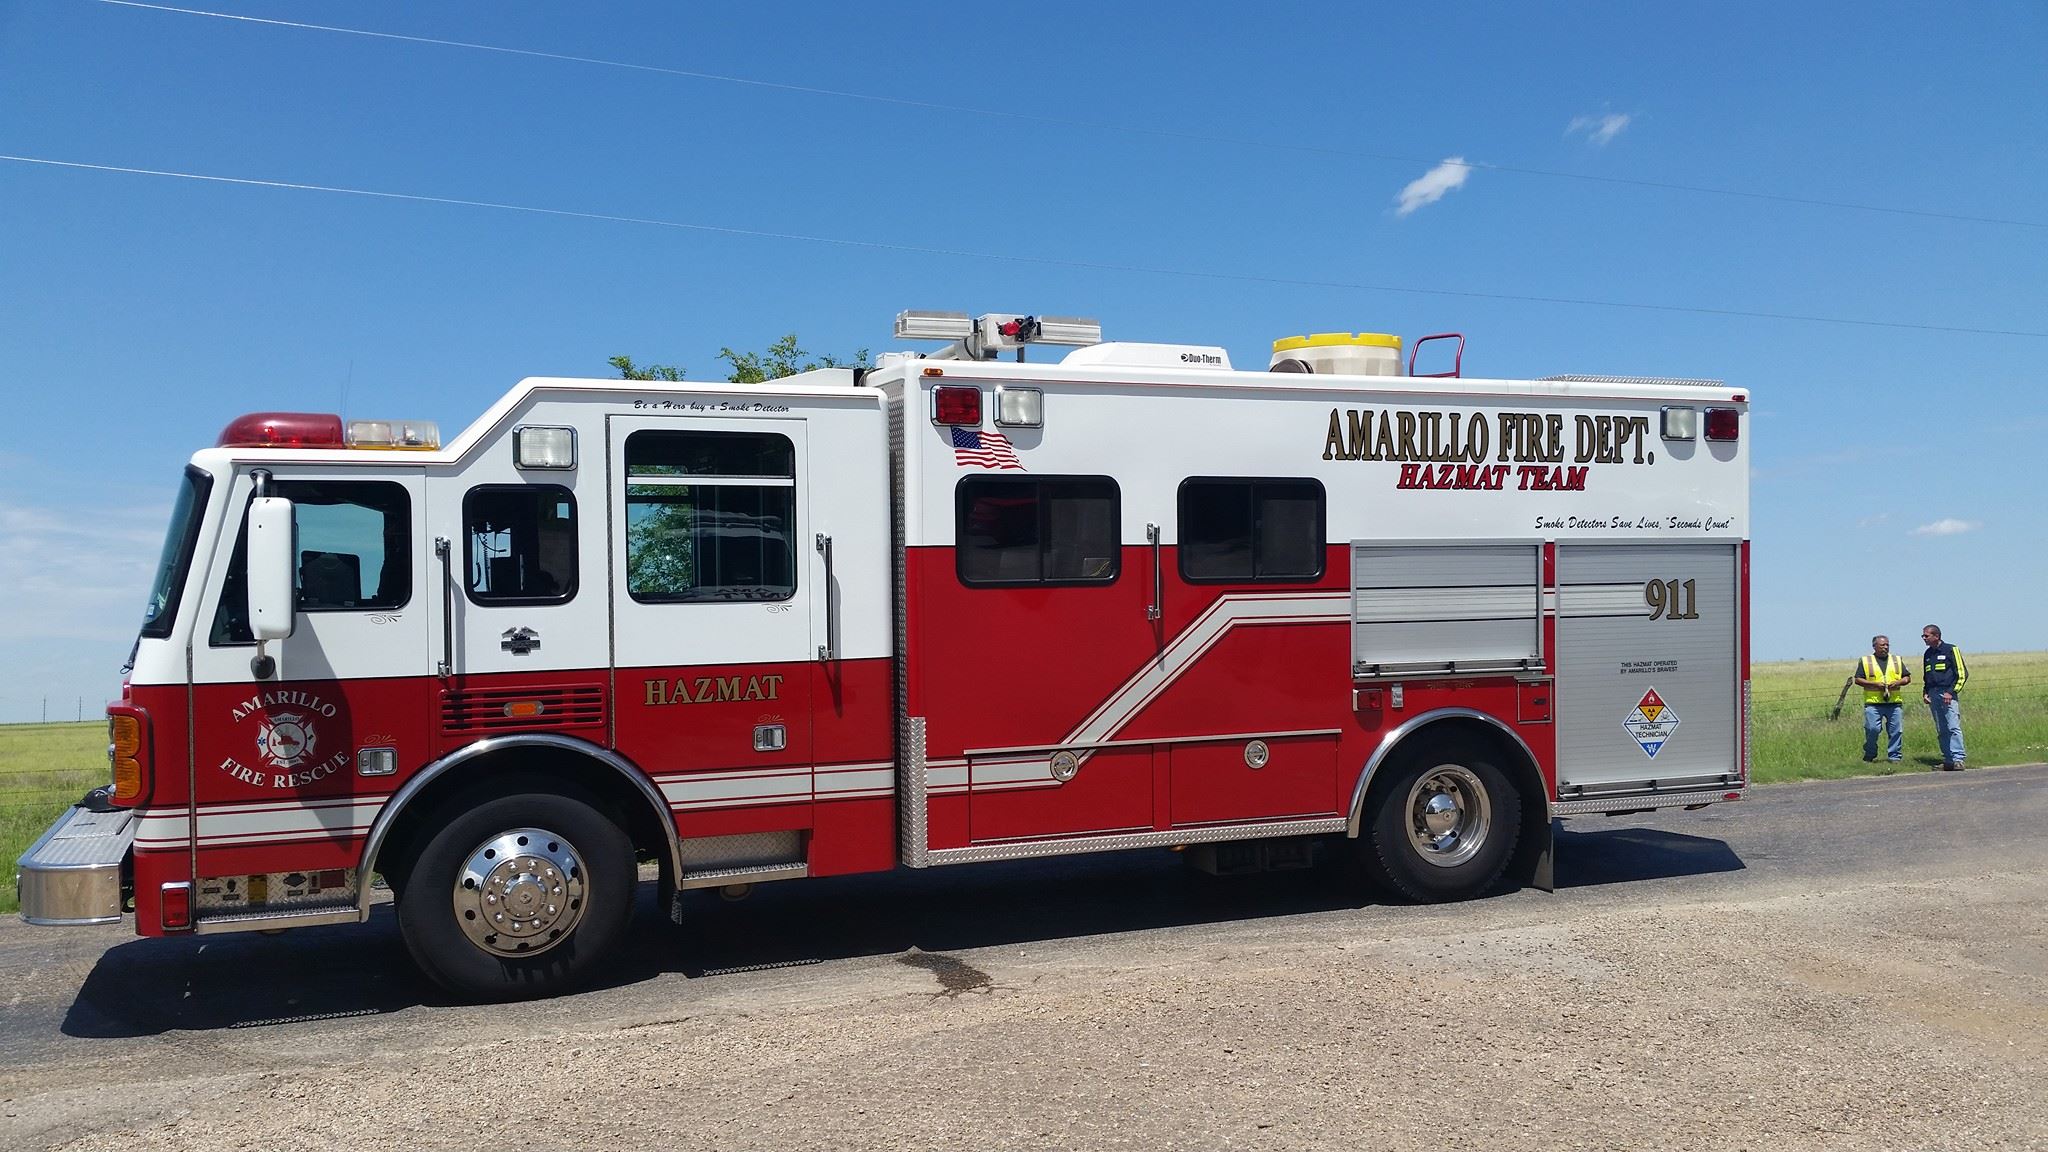 HazMat team responds to incident Northwest of Amarillo | KVII2048 x 1152